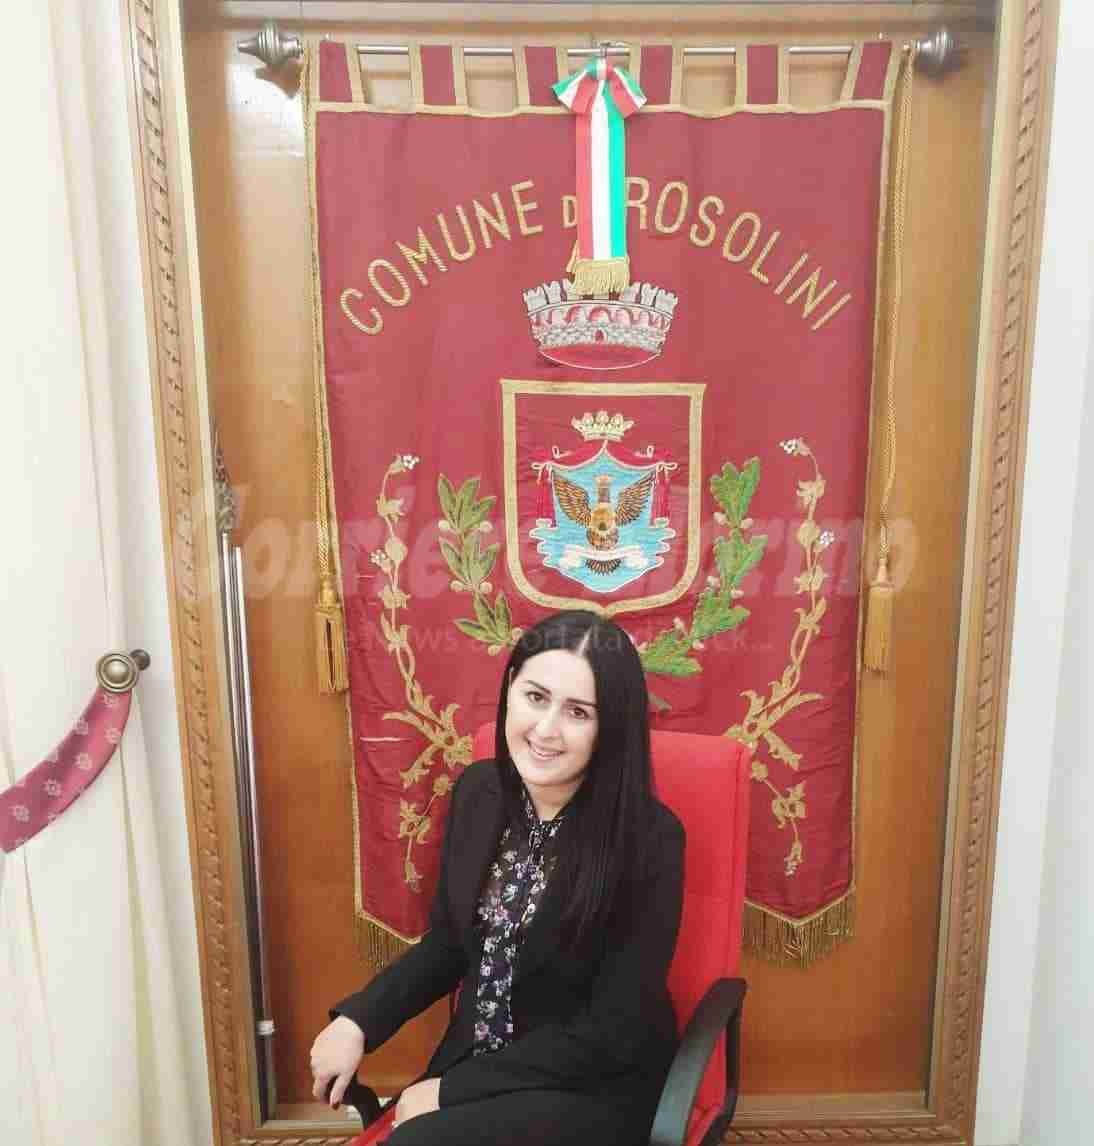 Il neo assessore Rosina Collemi: “Grazie al sindaco e al gruppo “Insieme per Rosolini” per la fiducia”